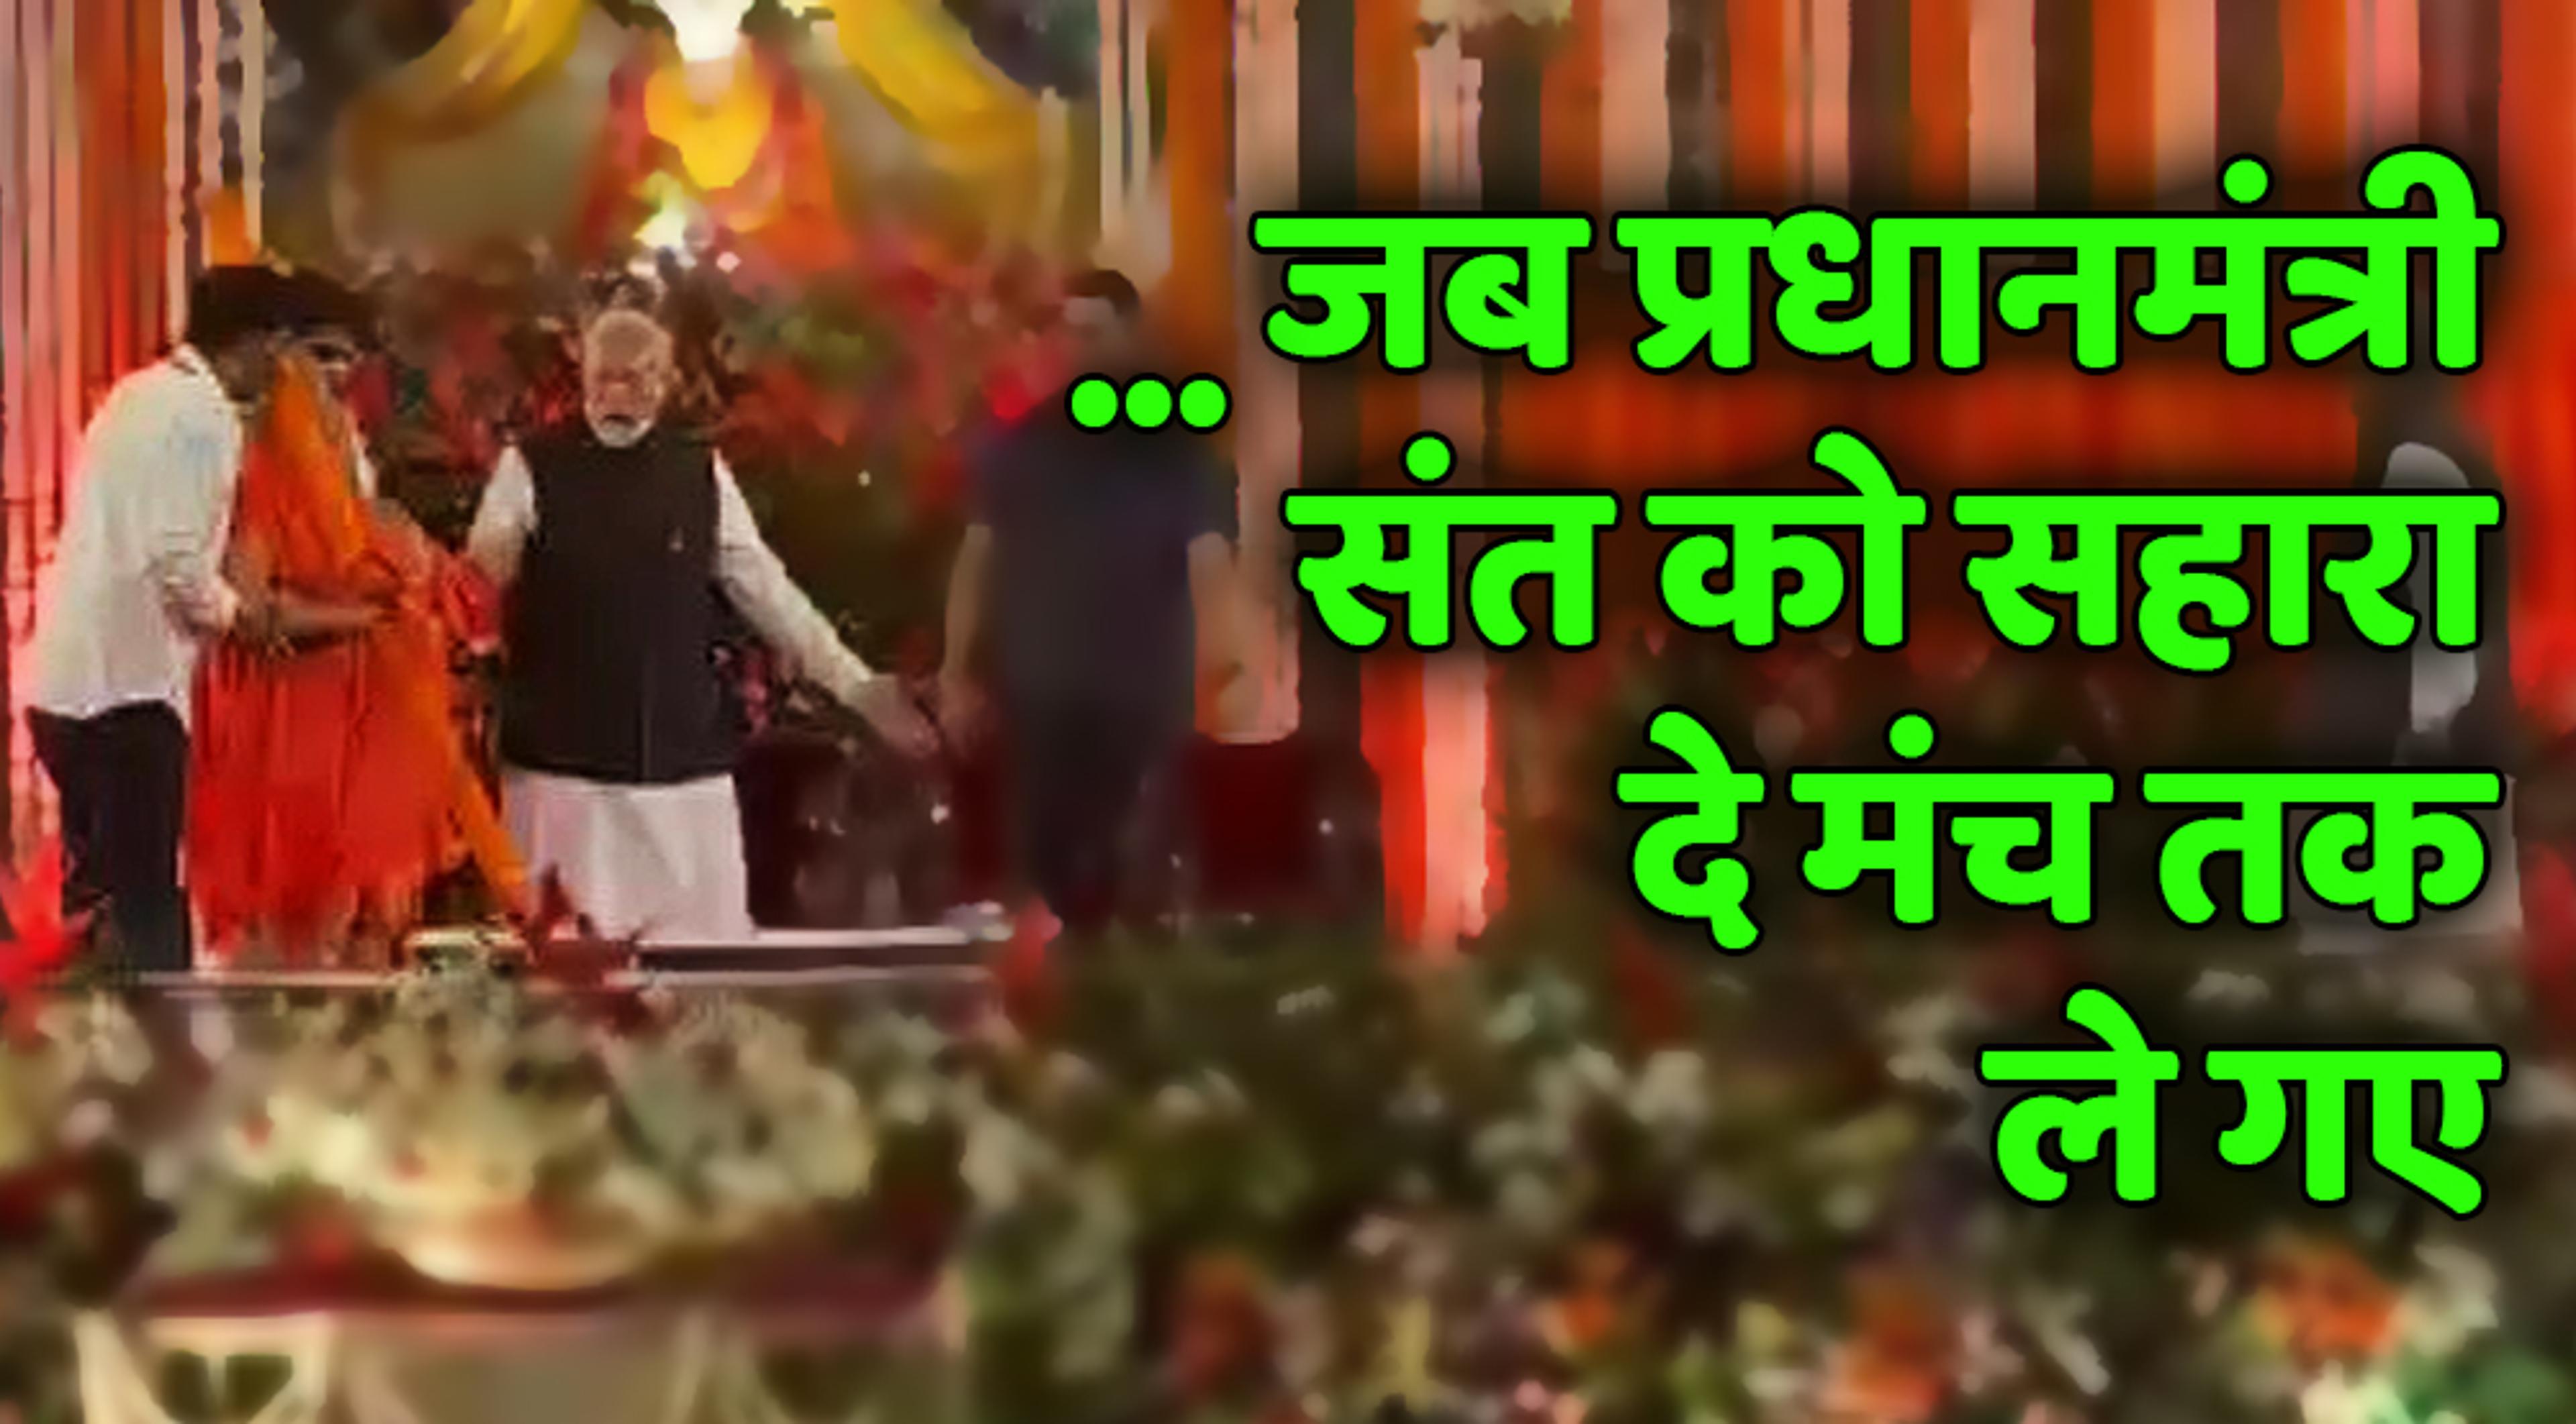 चित्रकूटः जब प्रधानमंत्री मोदी संत को सहारा देकर मंच तक ले गए